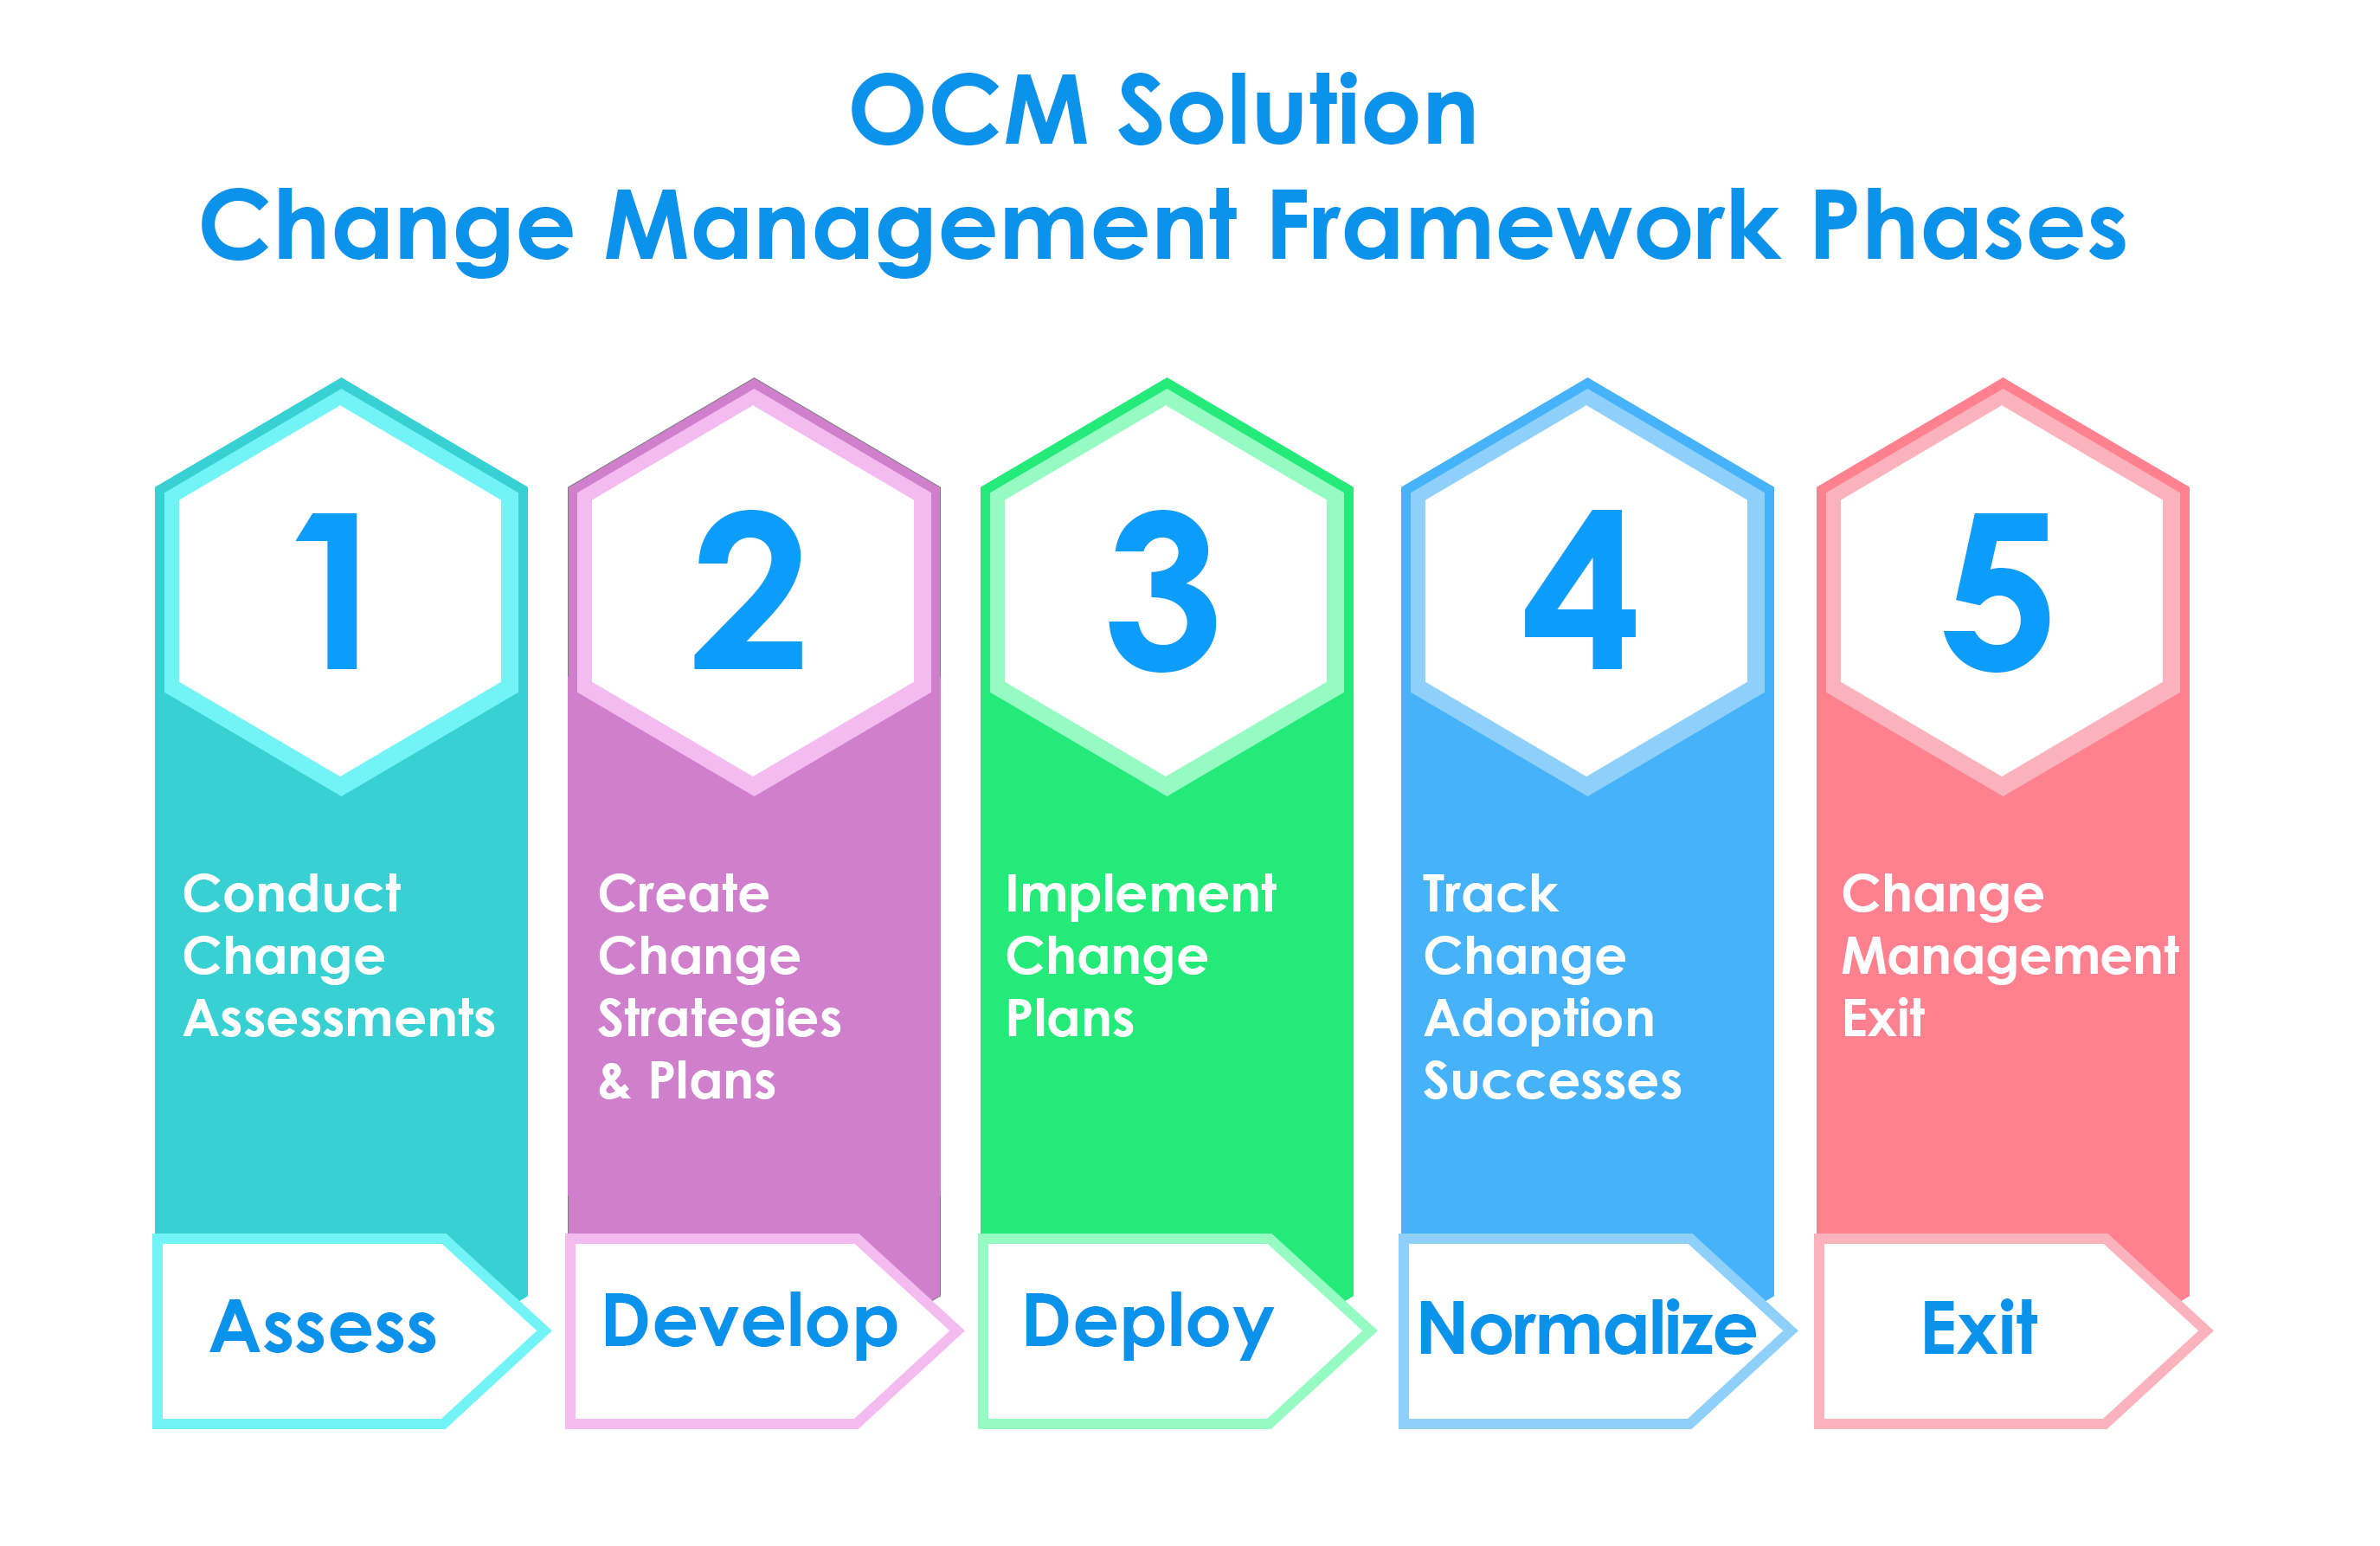 OCM Solution Change Management Framework